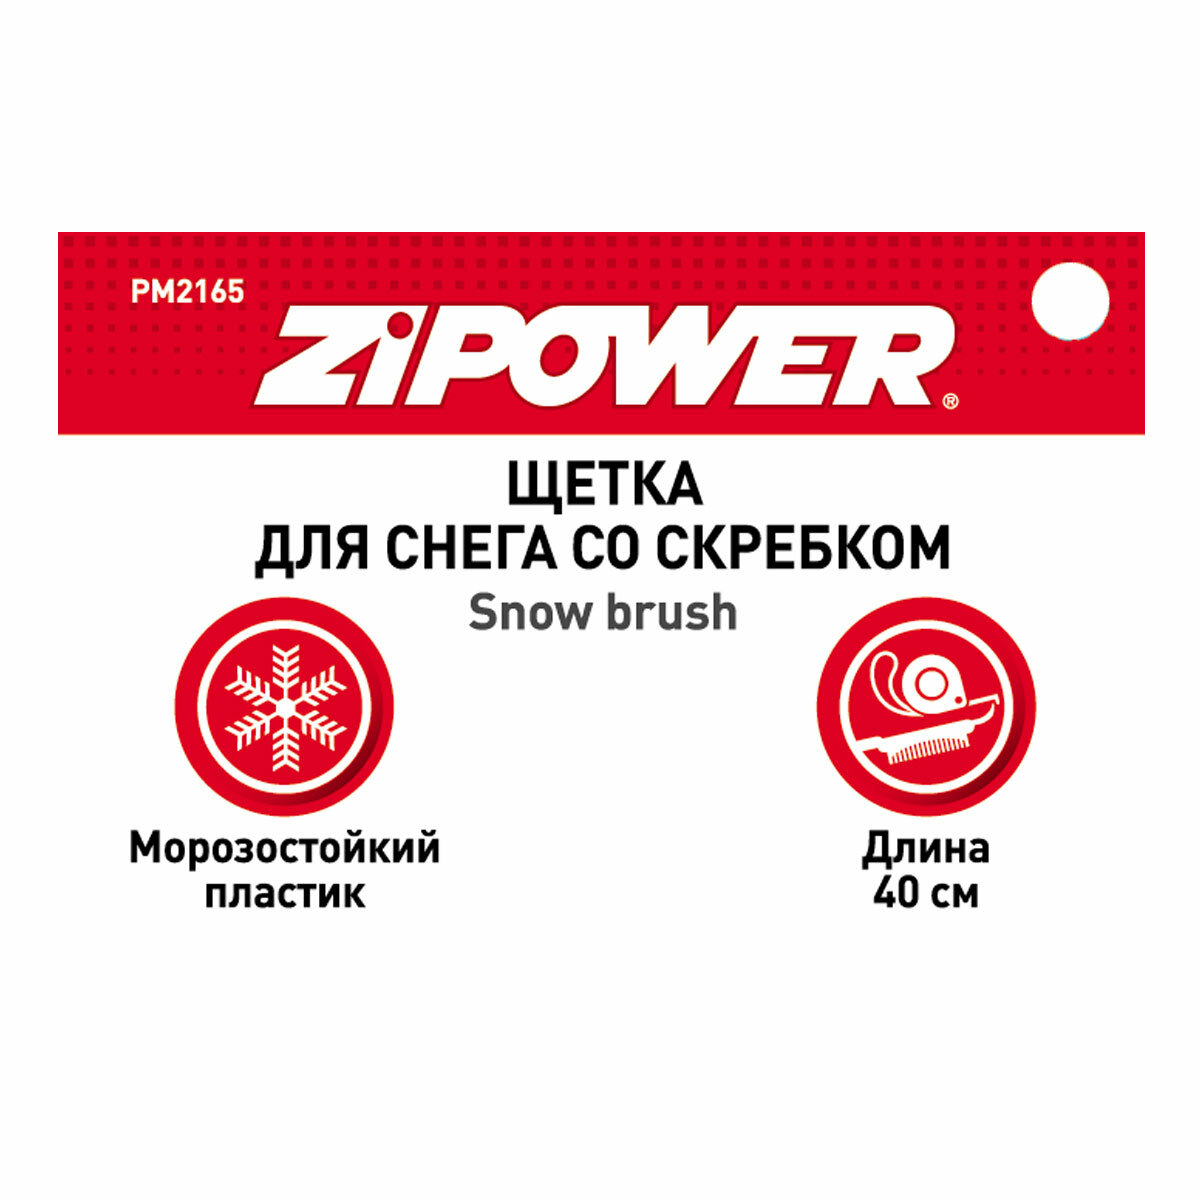 Щетка для снега со скребком 40 см Zipower Pm2165 - фото №10